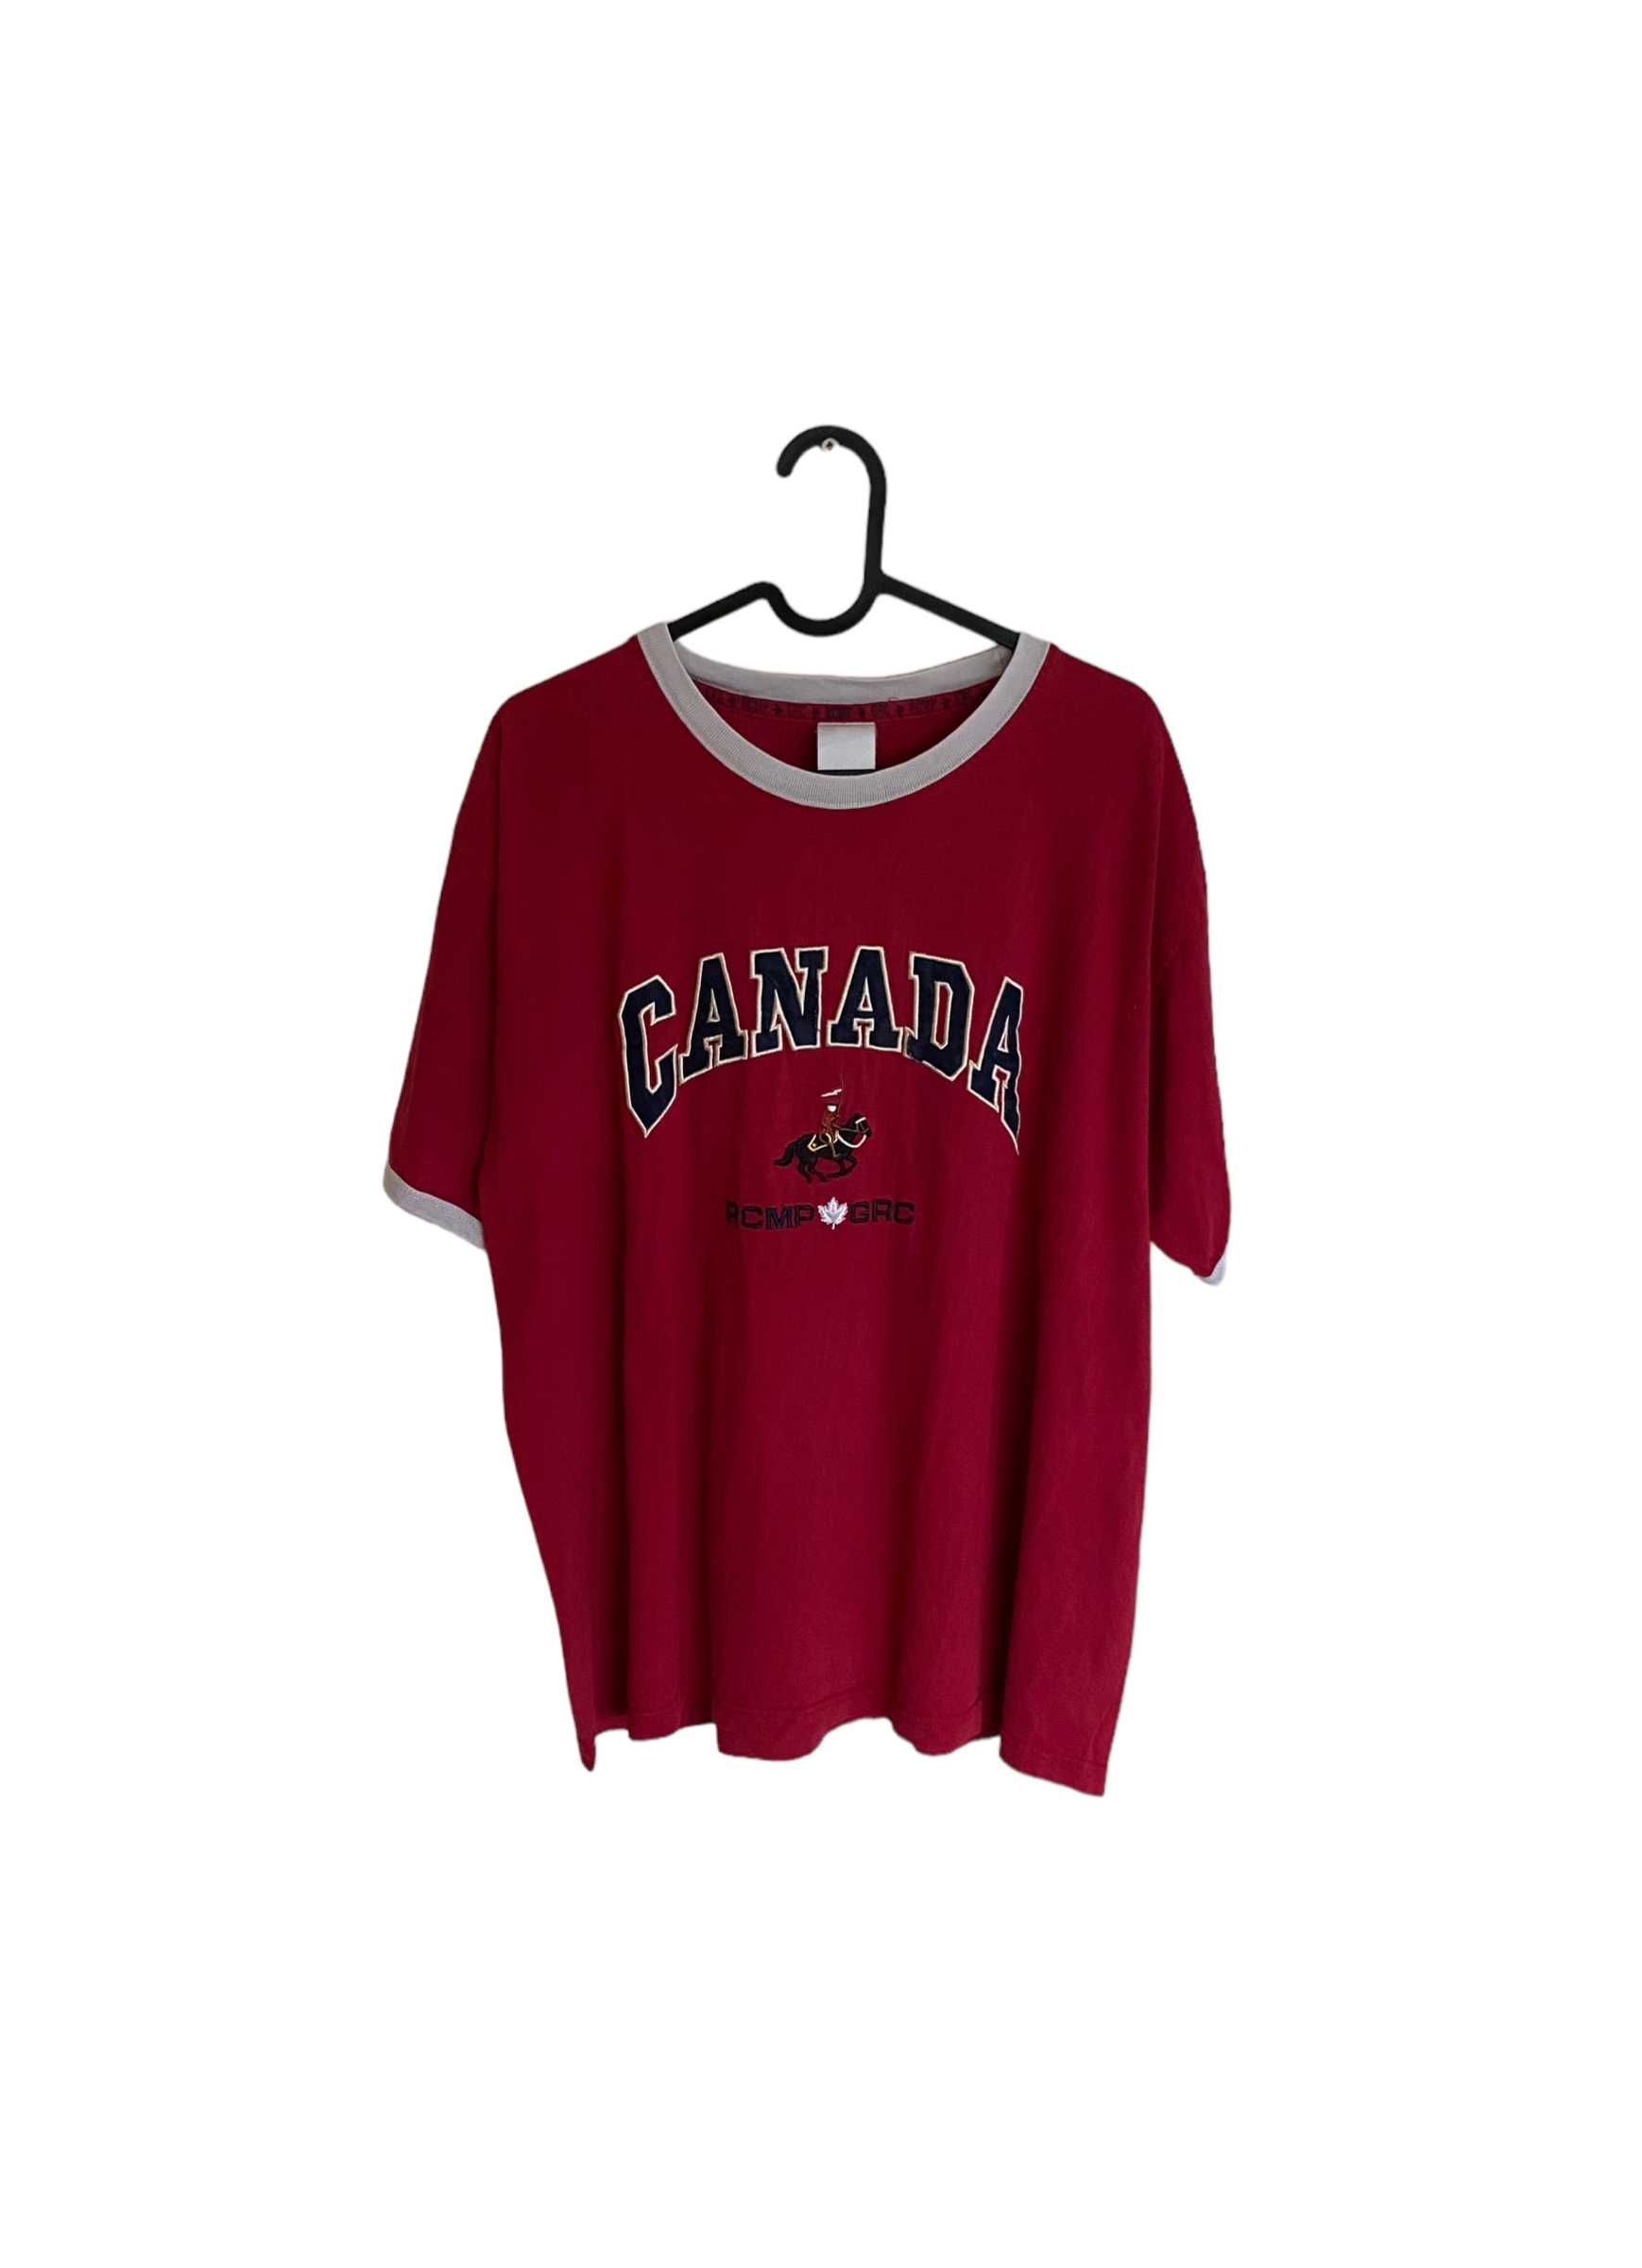 Canada haftowany vintage t-shirt, rozmiar M, stan bardzo dobry